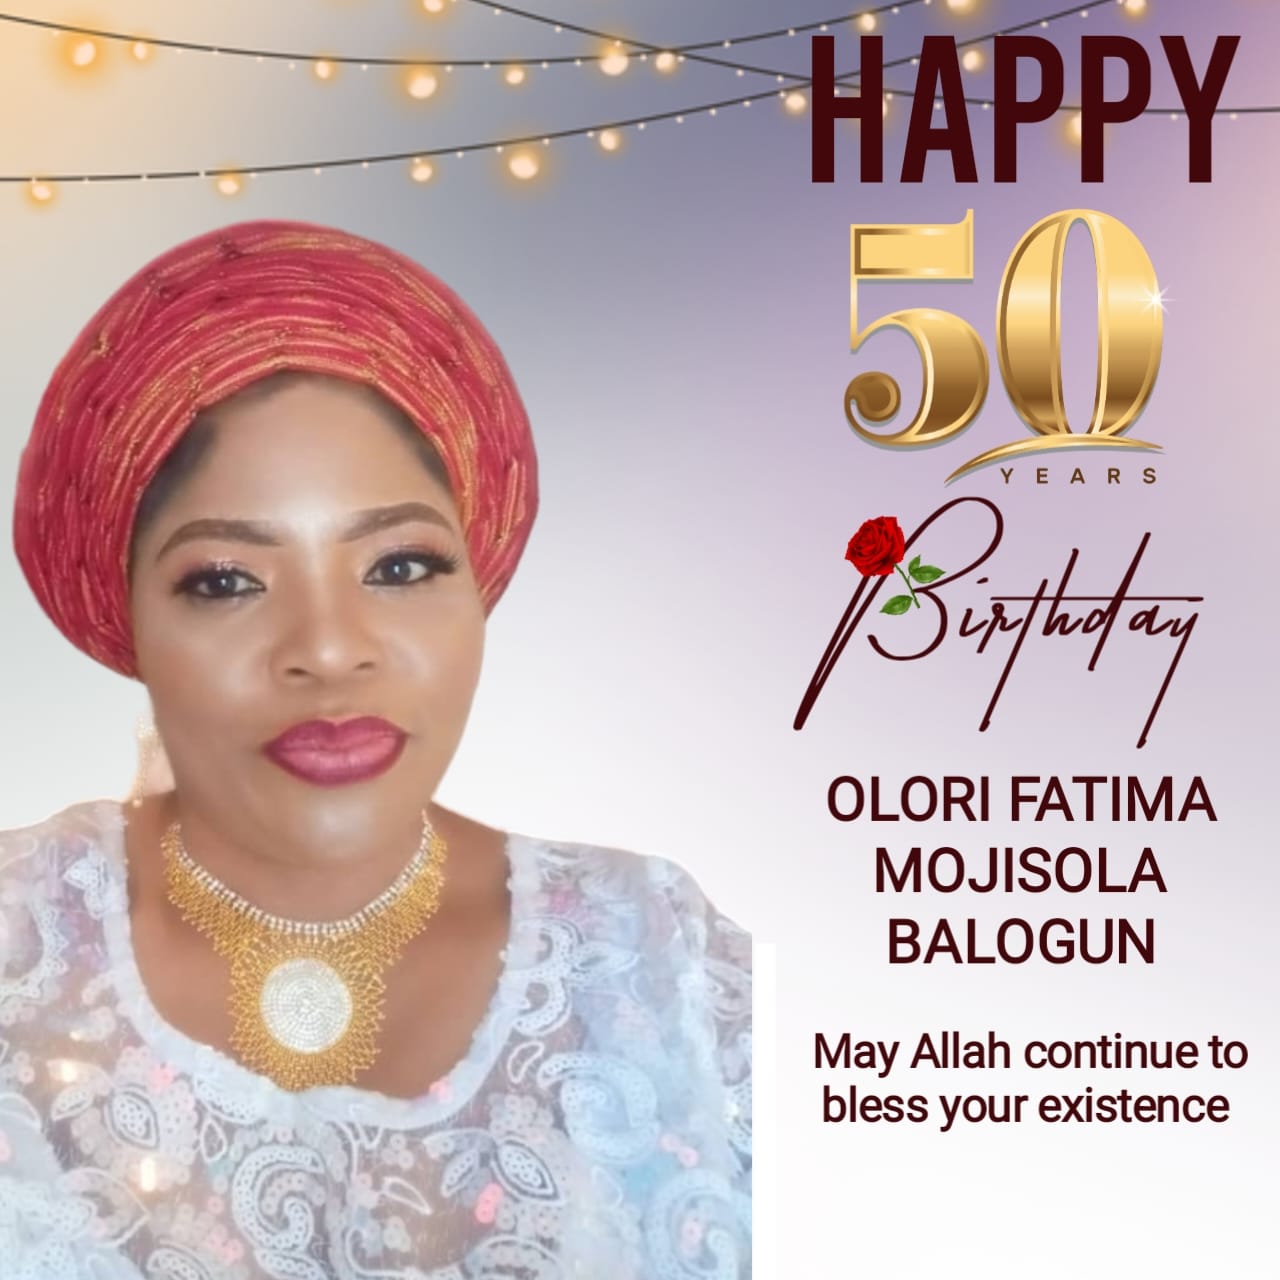 Olori Fatima Mojisola Balogun, the wife of the Elejinrin of Ejinrin of Lagos State, Oba Rafiu Balogun